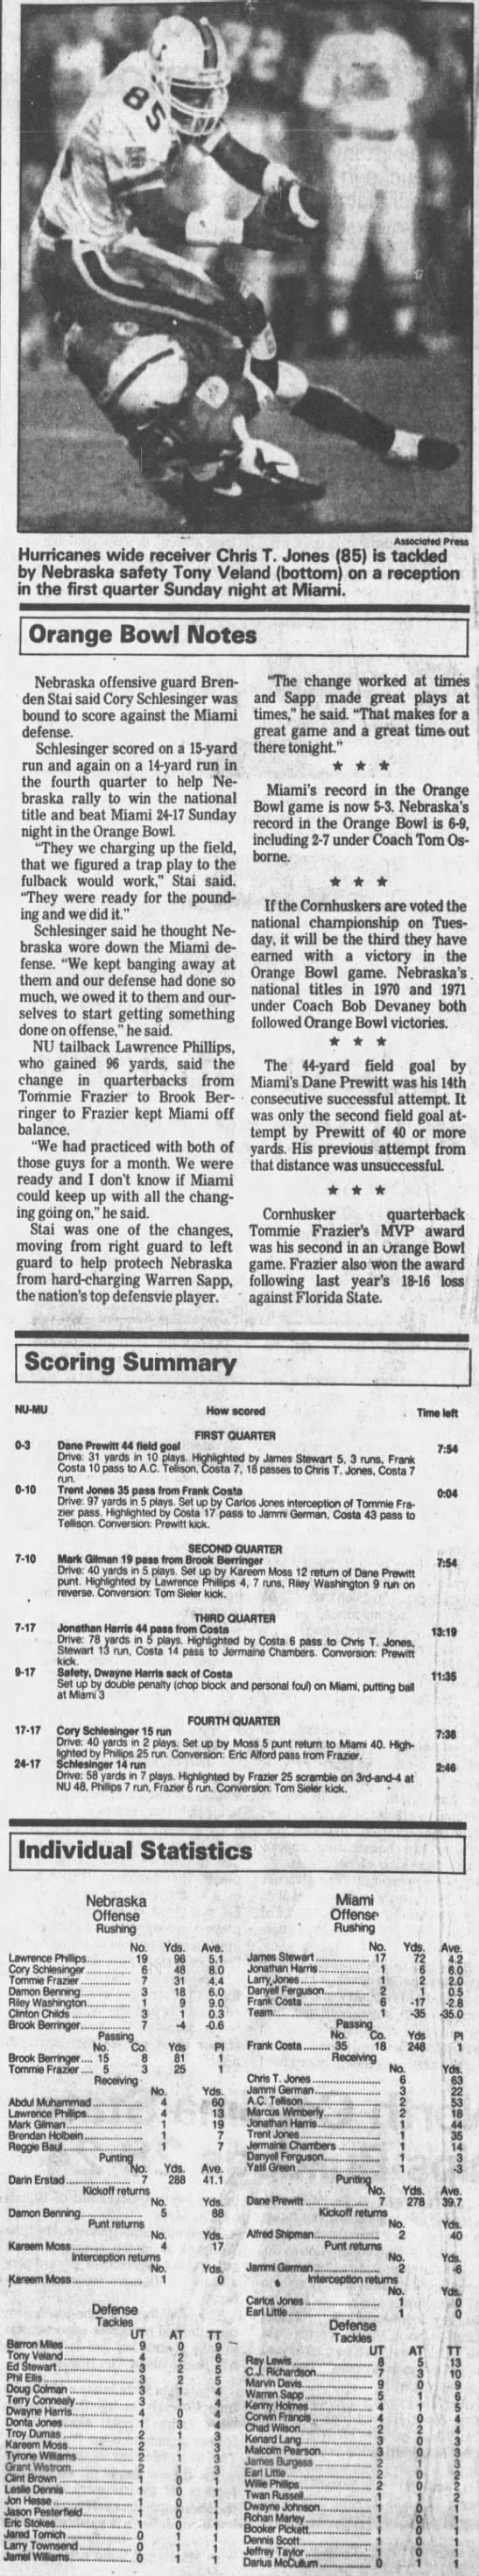 1995 Orange Bowl notes & scoring summary - 